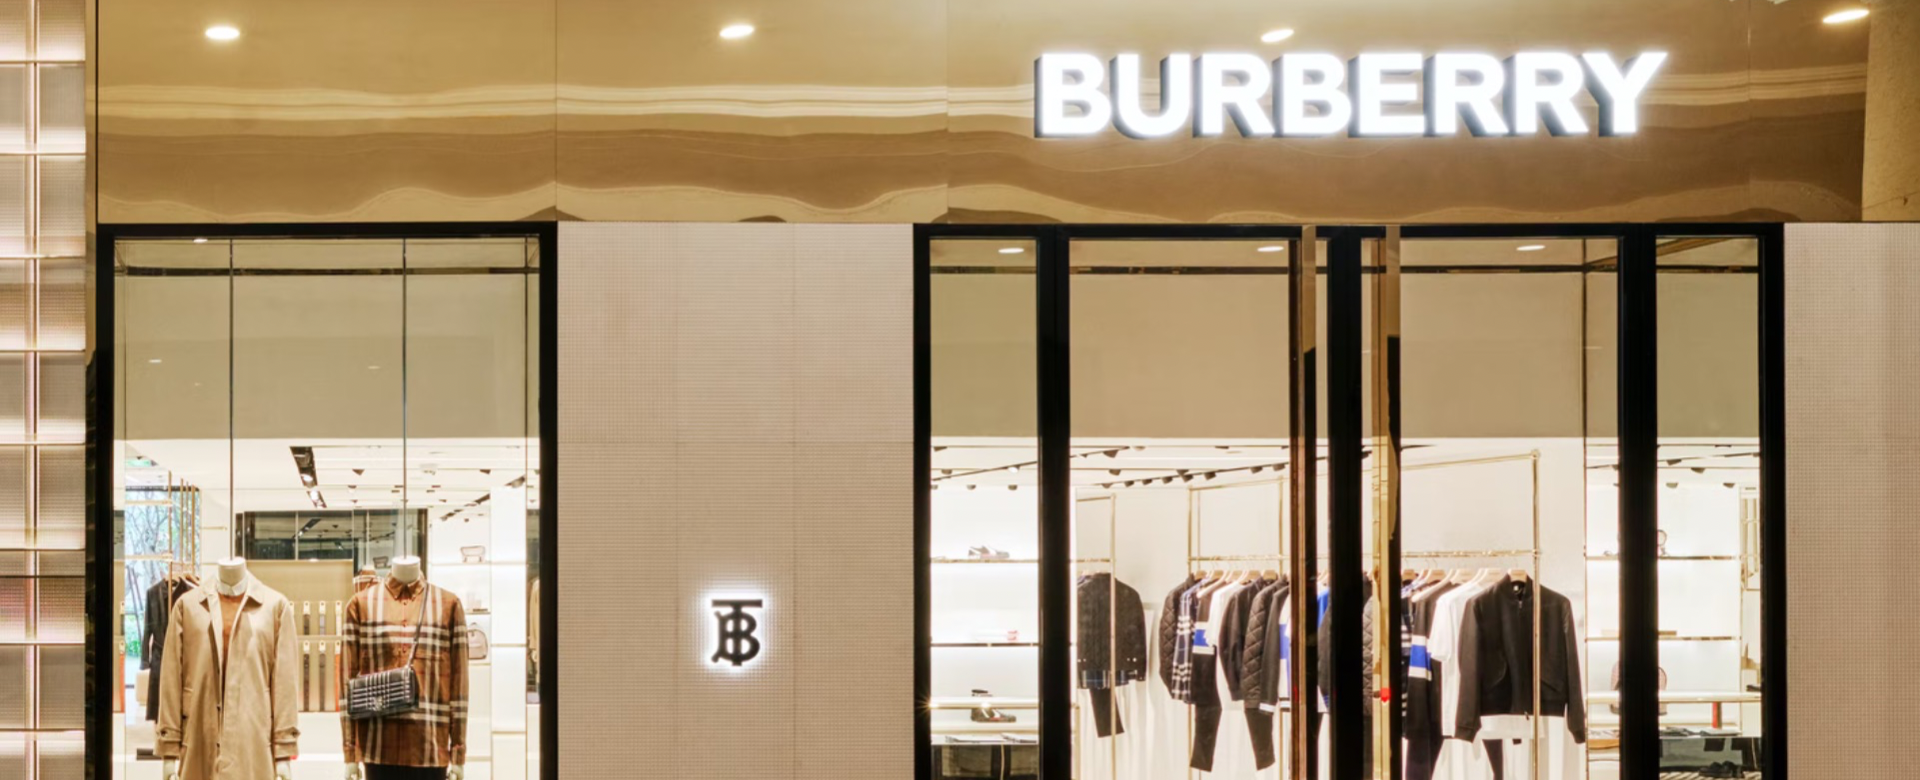 Burberry mở lại cửa hàng chính thức tại Hồ Chí Minh